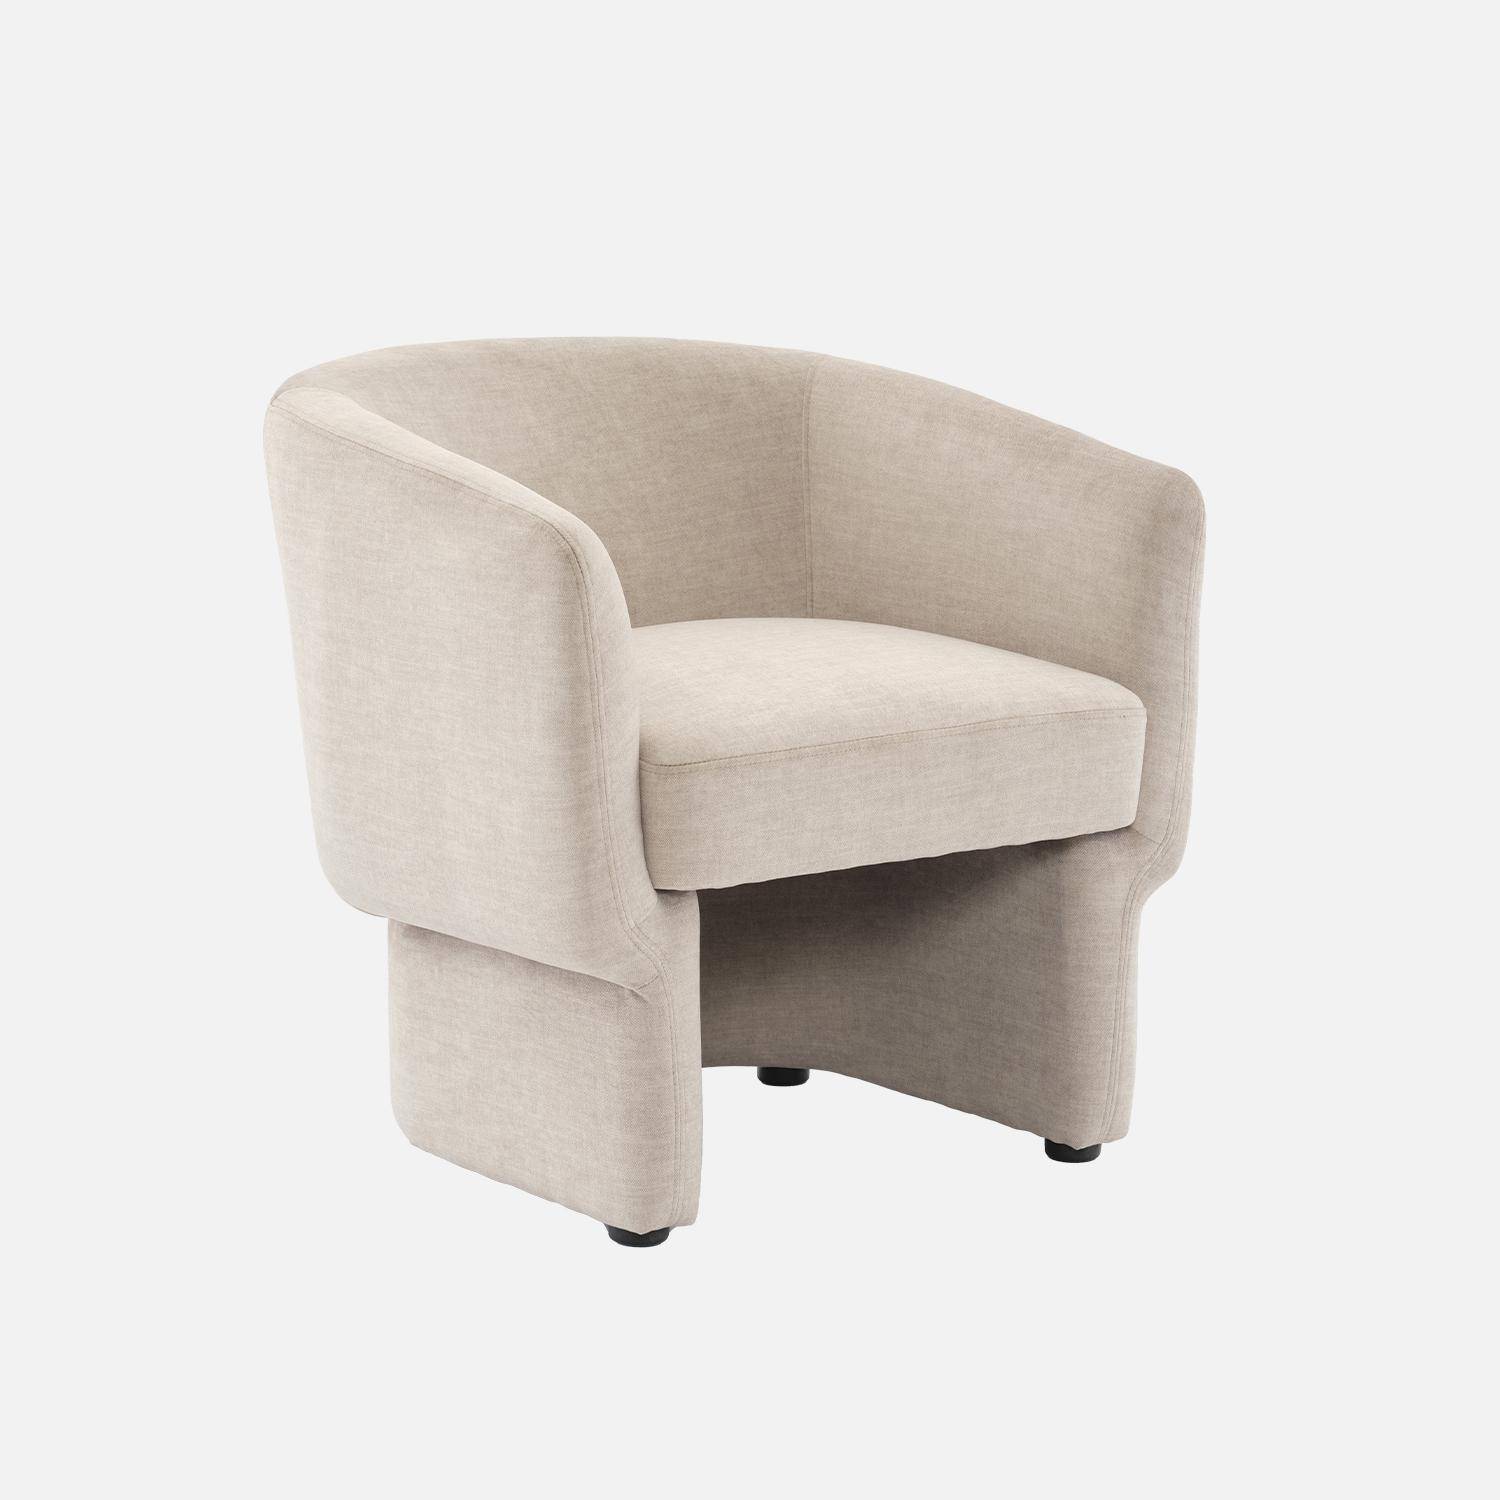 Beige stoffen fauteuil, Dolce, L 70 x P 70 x H 72cm, eucalyptushouten structuur Photo1